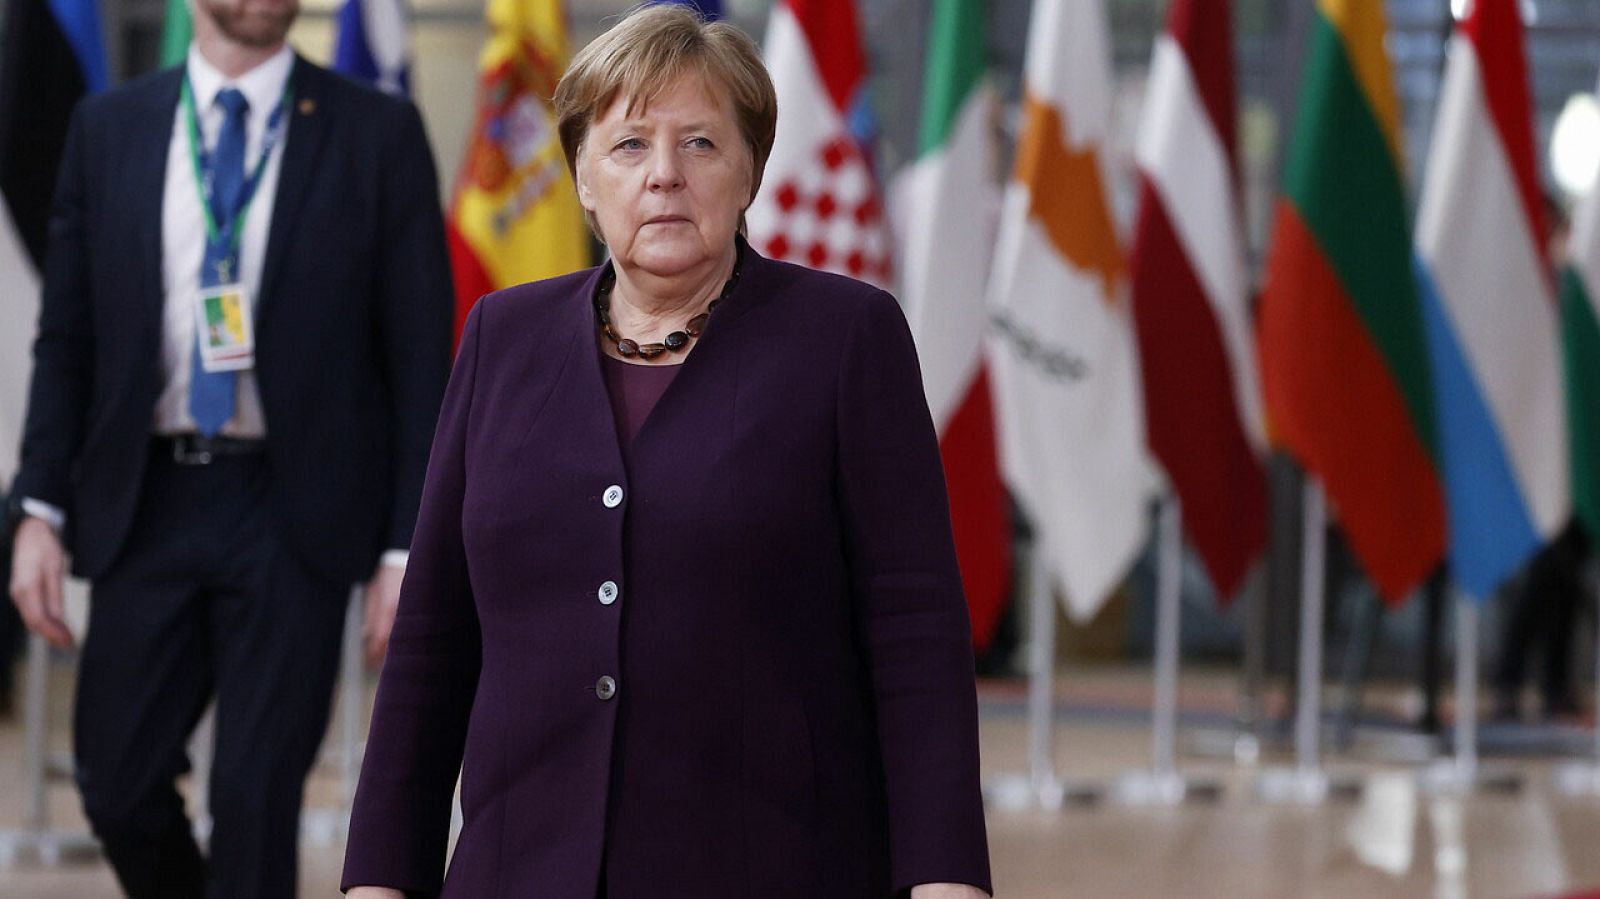 Merkel condena los ataques xenófobos de la ciudad alemana de Hanau: "El racismo es veneno"